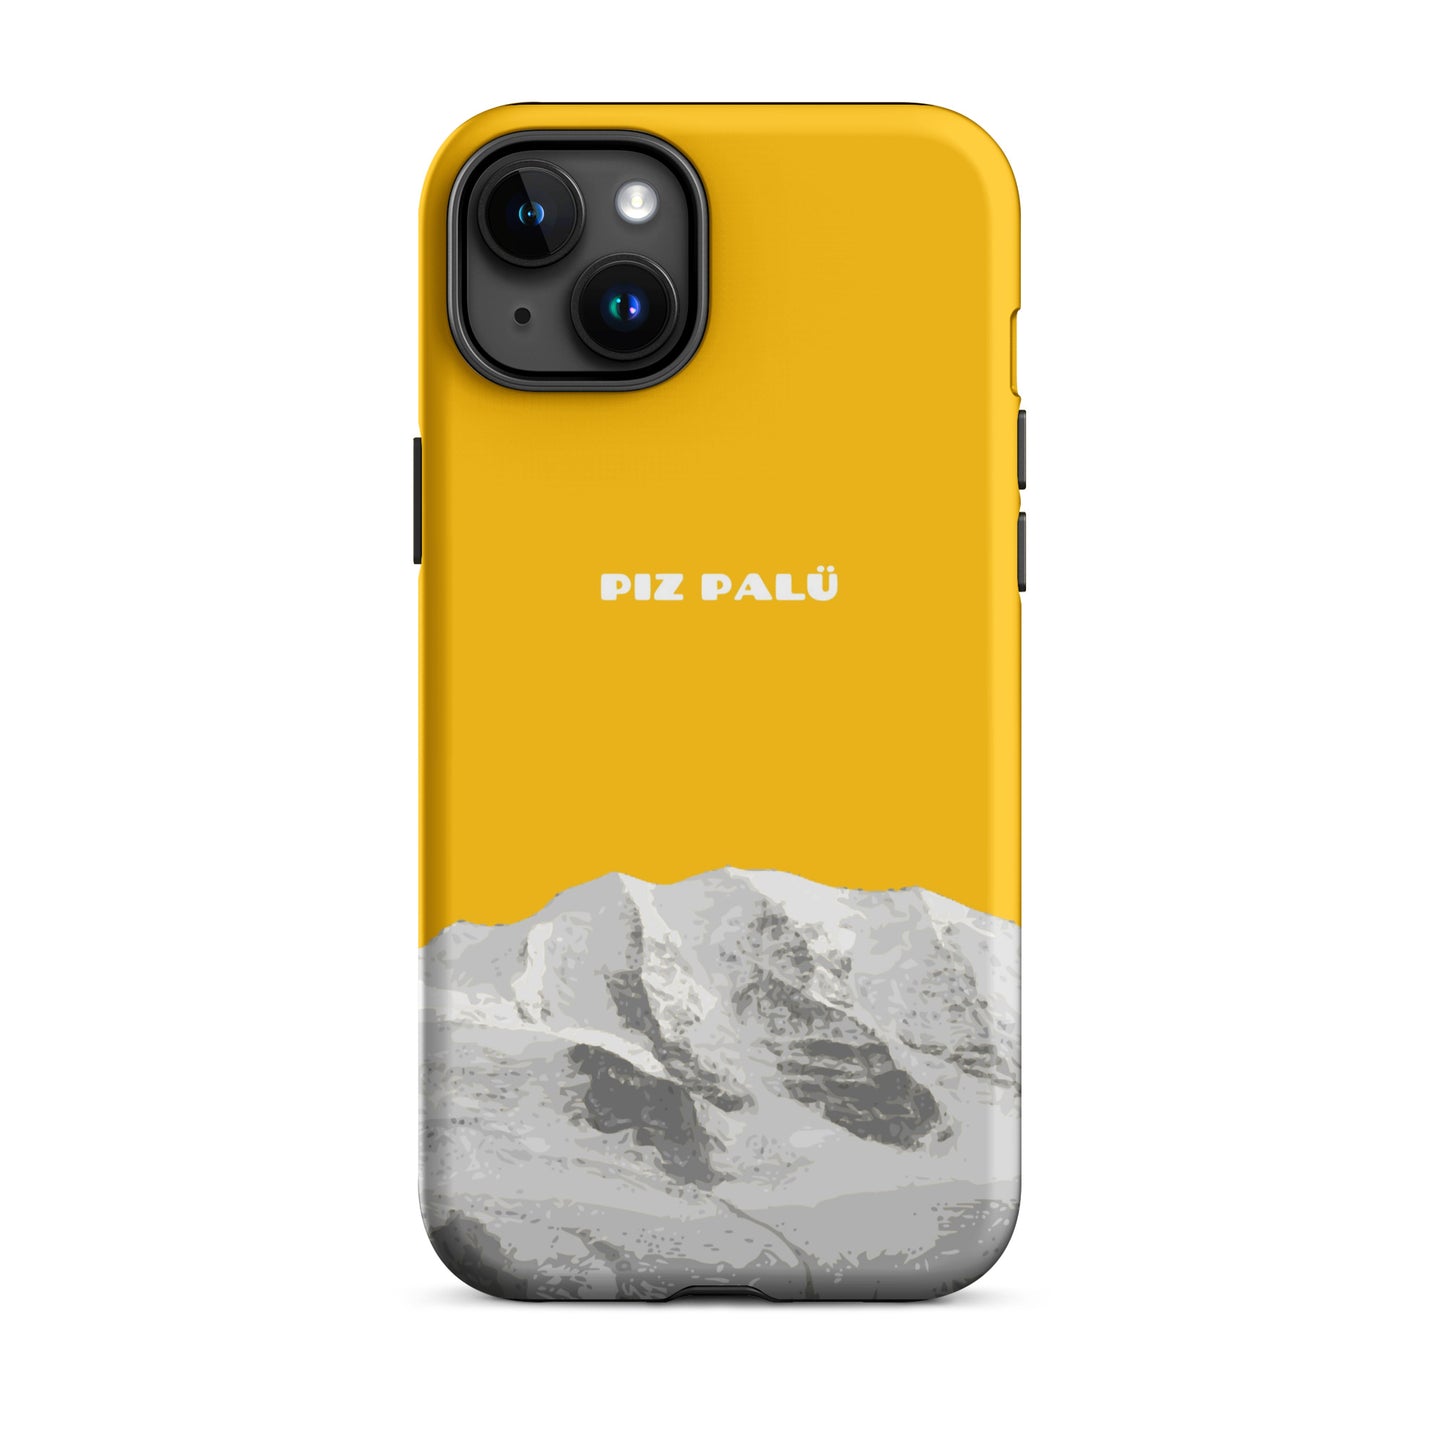 Hülle für das iPhone 15 Plus von Apple in der Farbe Goldgelb, dass den Piz Palü in Graubünden zeigt.